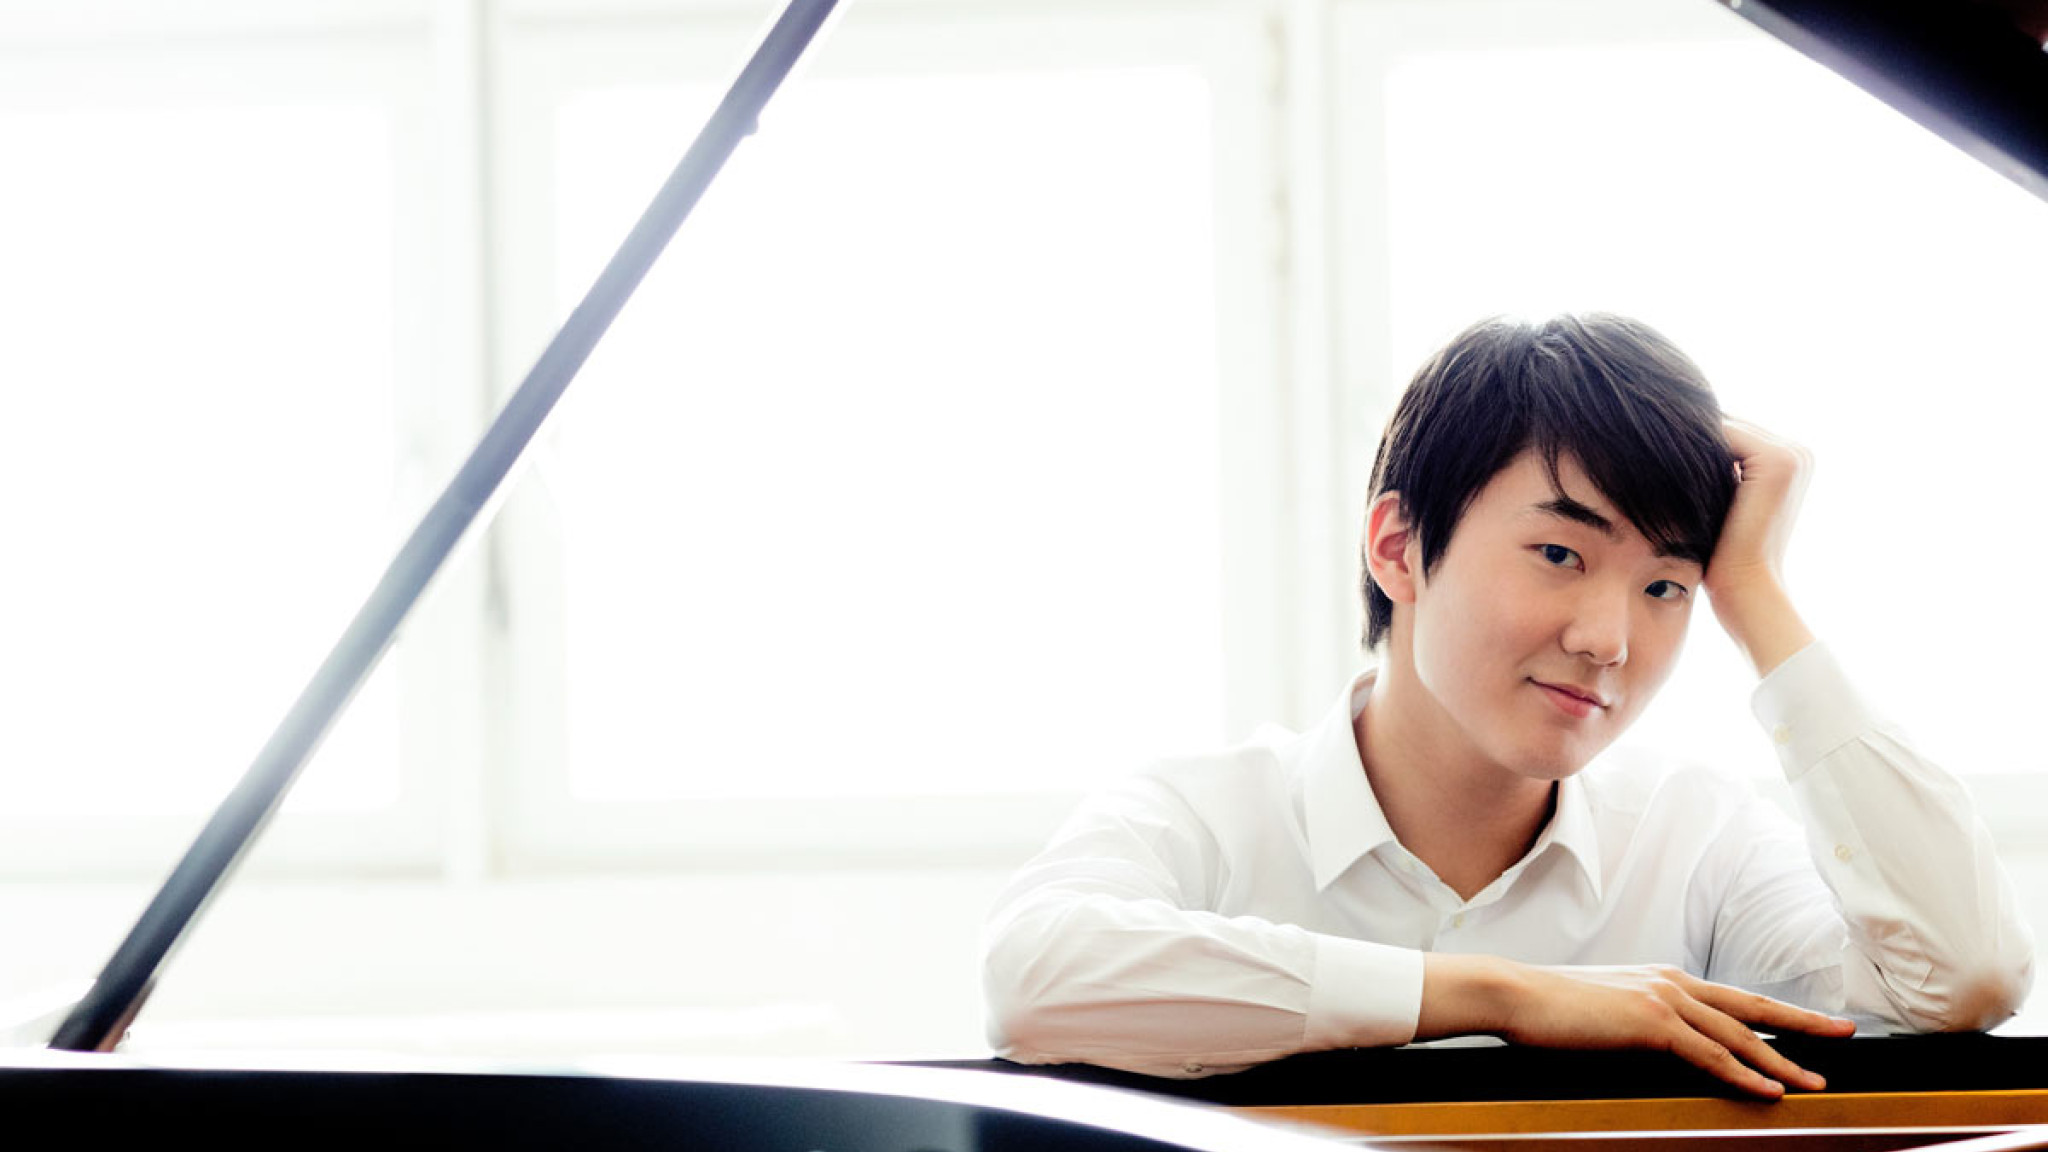 "Chopin spricht direkt das Herz an" – Seong-Jin Cho spielt Chopins Klavierkonzert Nr. 1